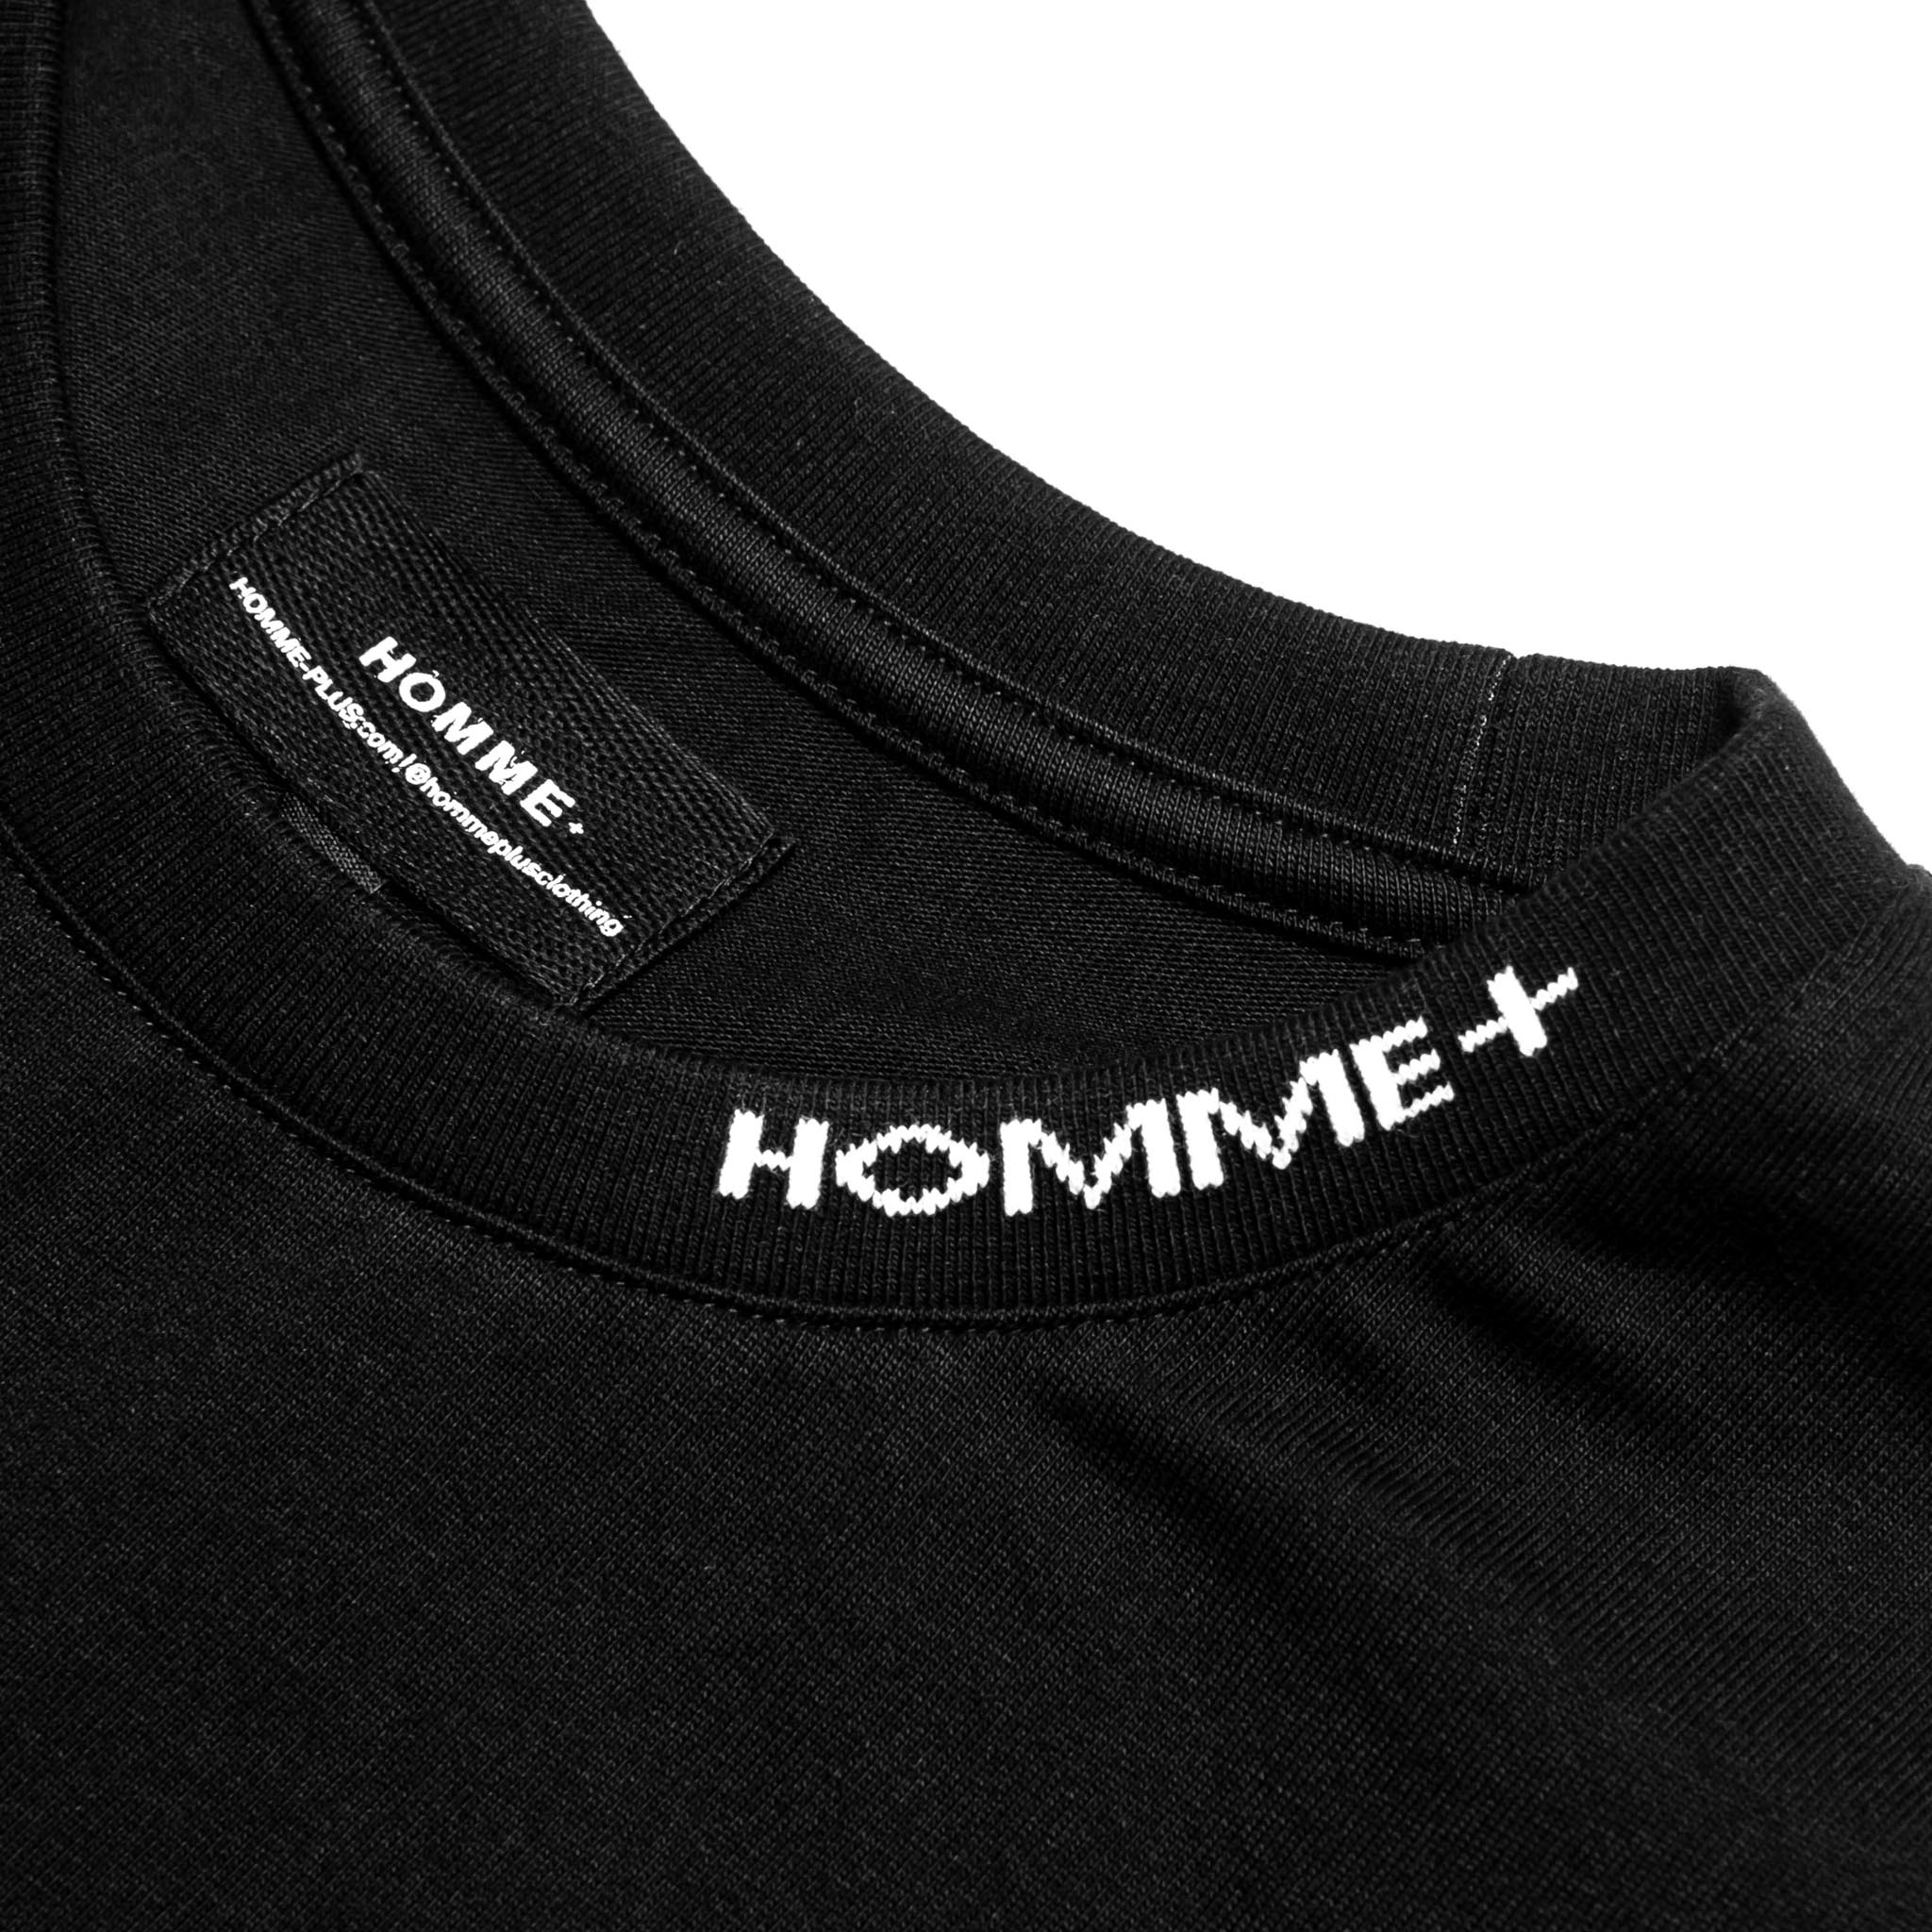 HOMME+ QR Code Print Tee Black